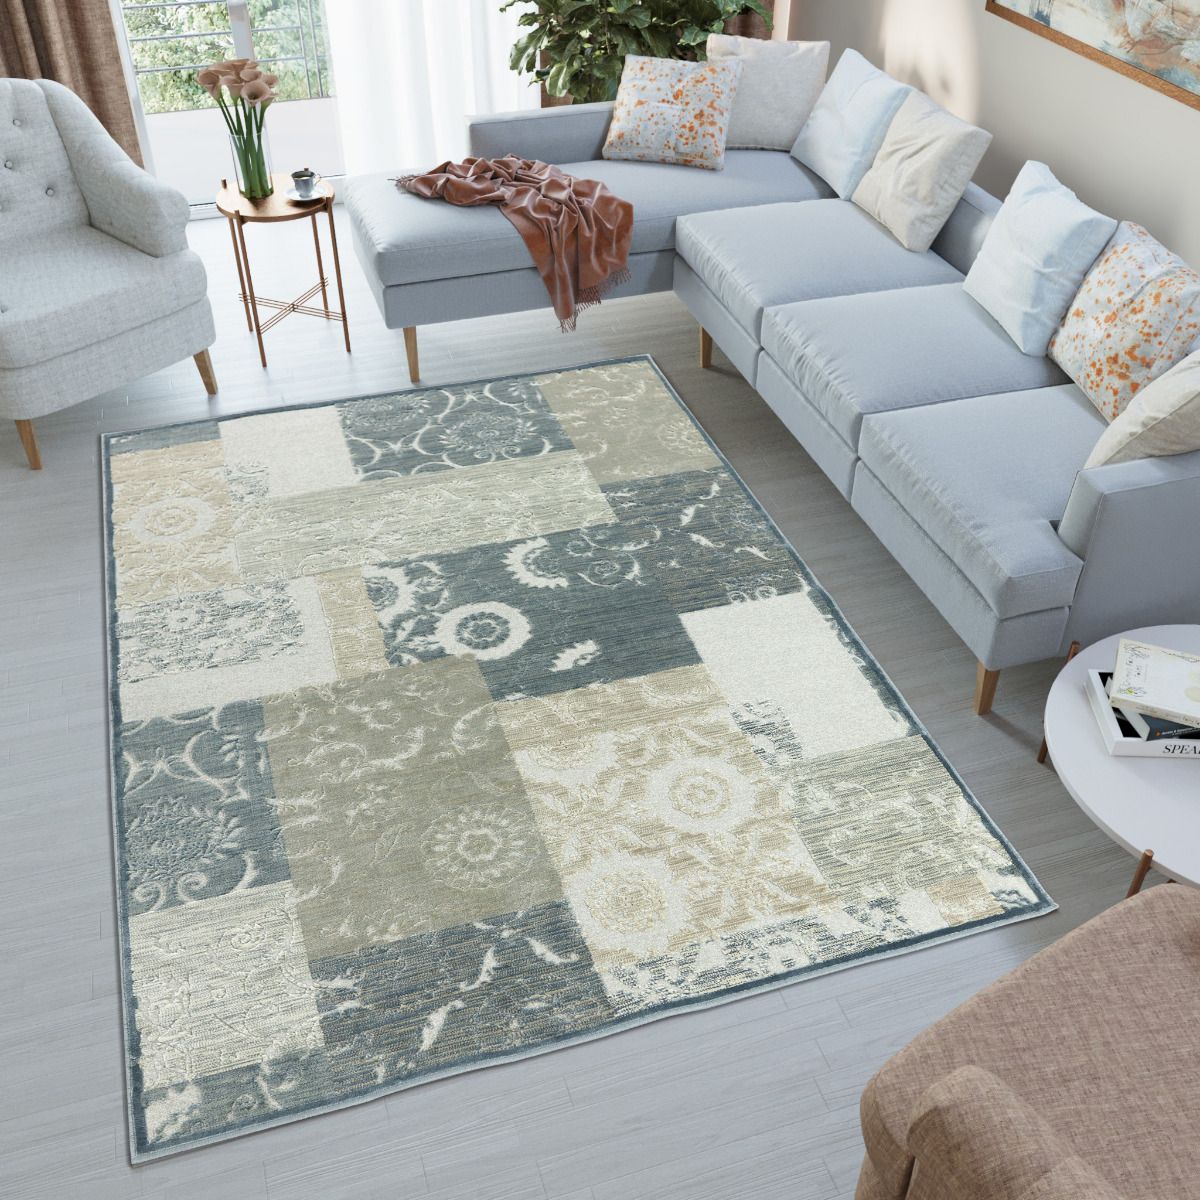 Najpopularniejsze rodzaje dywanów do domu